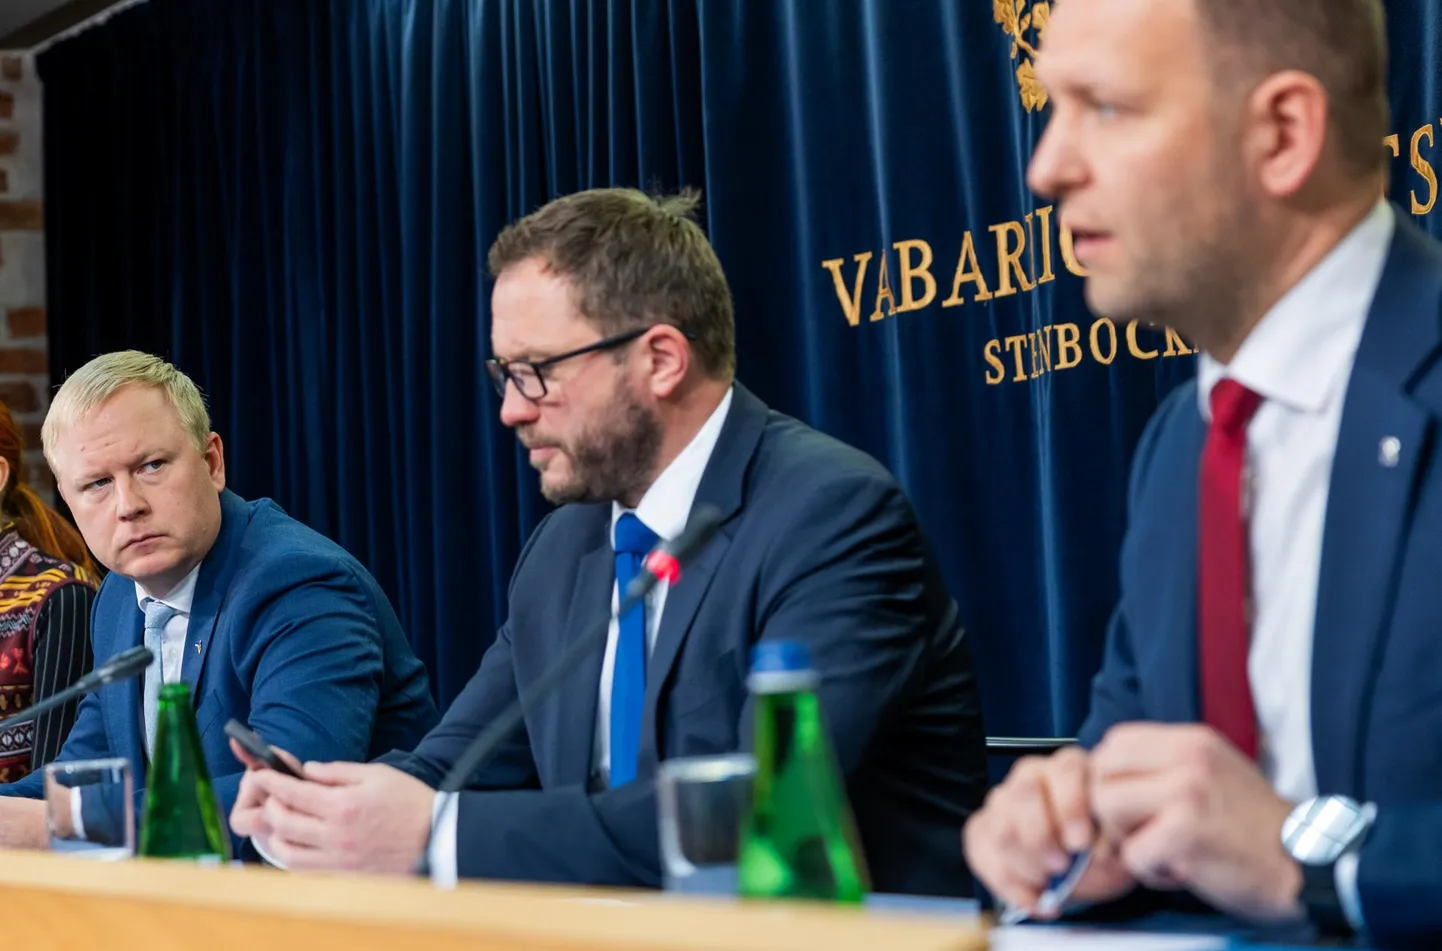 Koalitsioonis on üksmeel riigieelarve eesmärkides, kuid mitte lahendustes. Mart Võrklaev (vasakult) esitas juba oma ettepanekud. Mida pakuvad aga välja Eesti 200 ja SDE eesotsas Margus Tsahkna ja Lauri Läänemetsaga?